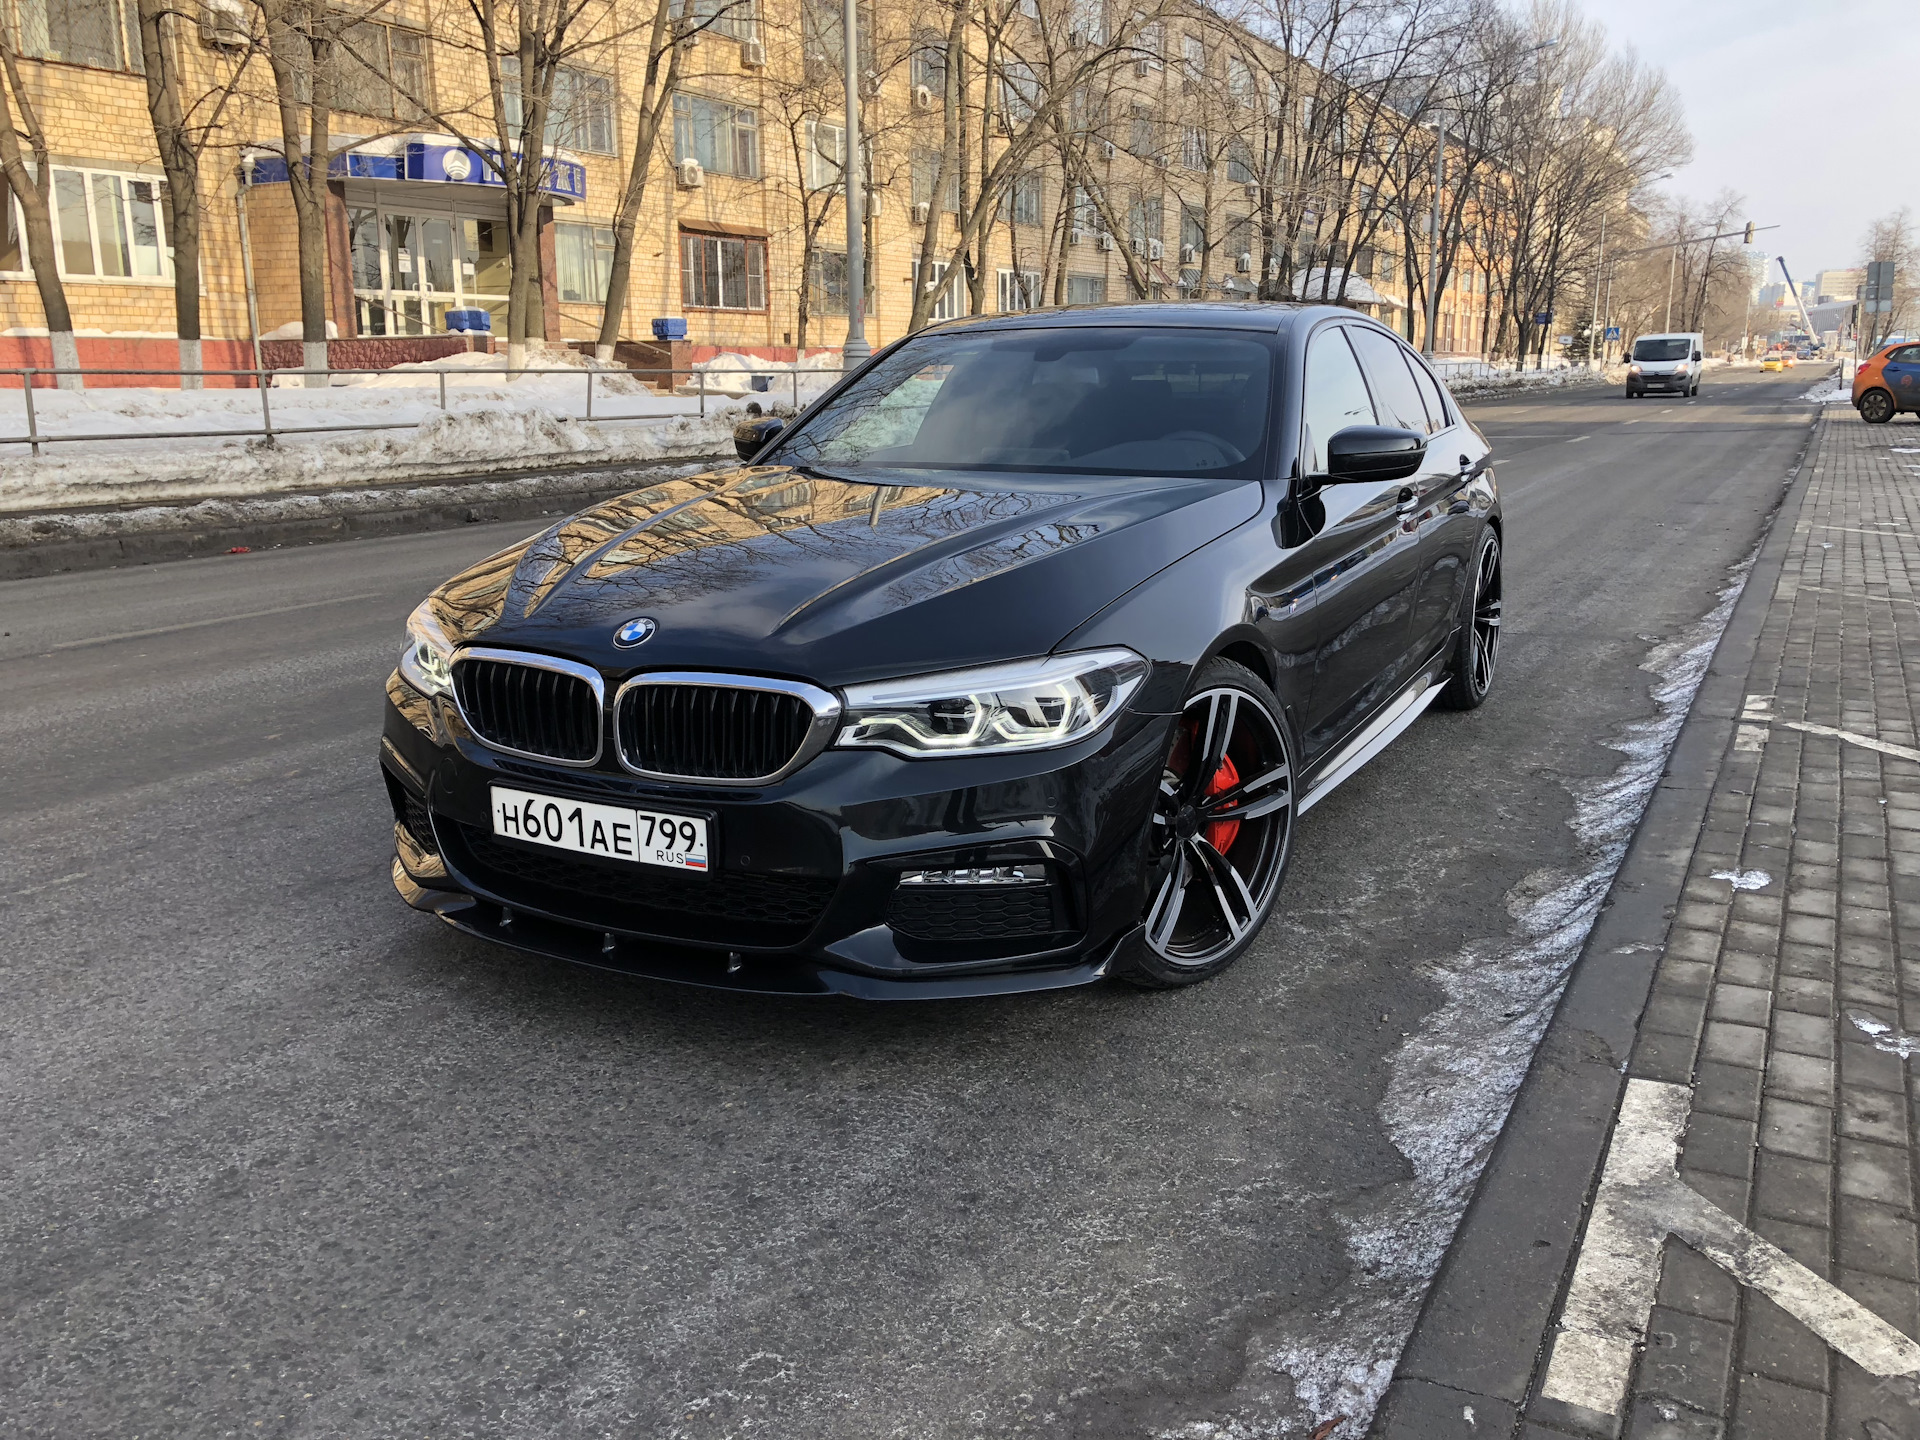 Купить бмв м5 новую. BMW m5 f90. BMW m5 f10. BMW m5 f90 Black Russia. БМВ м5 ф10 черная.